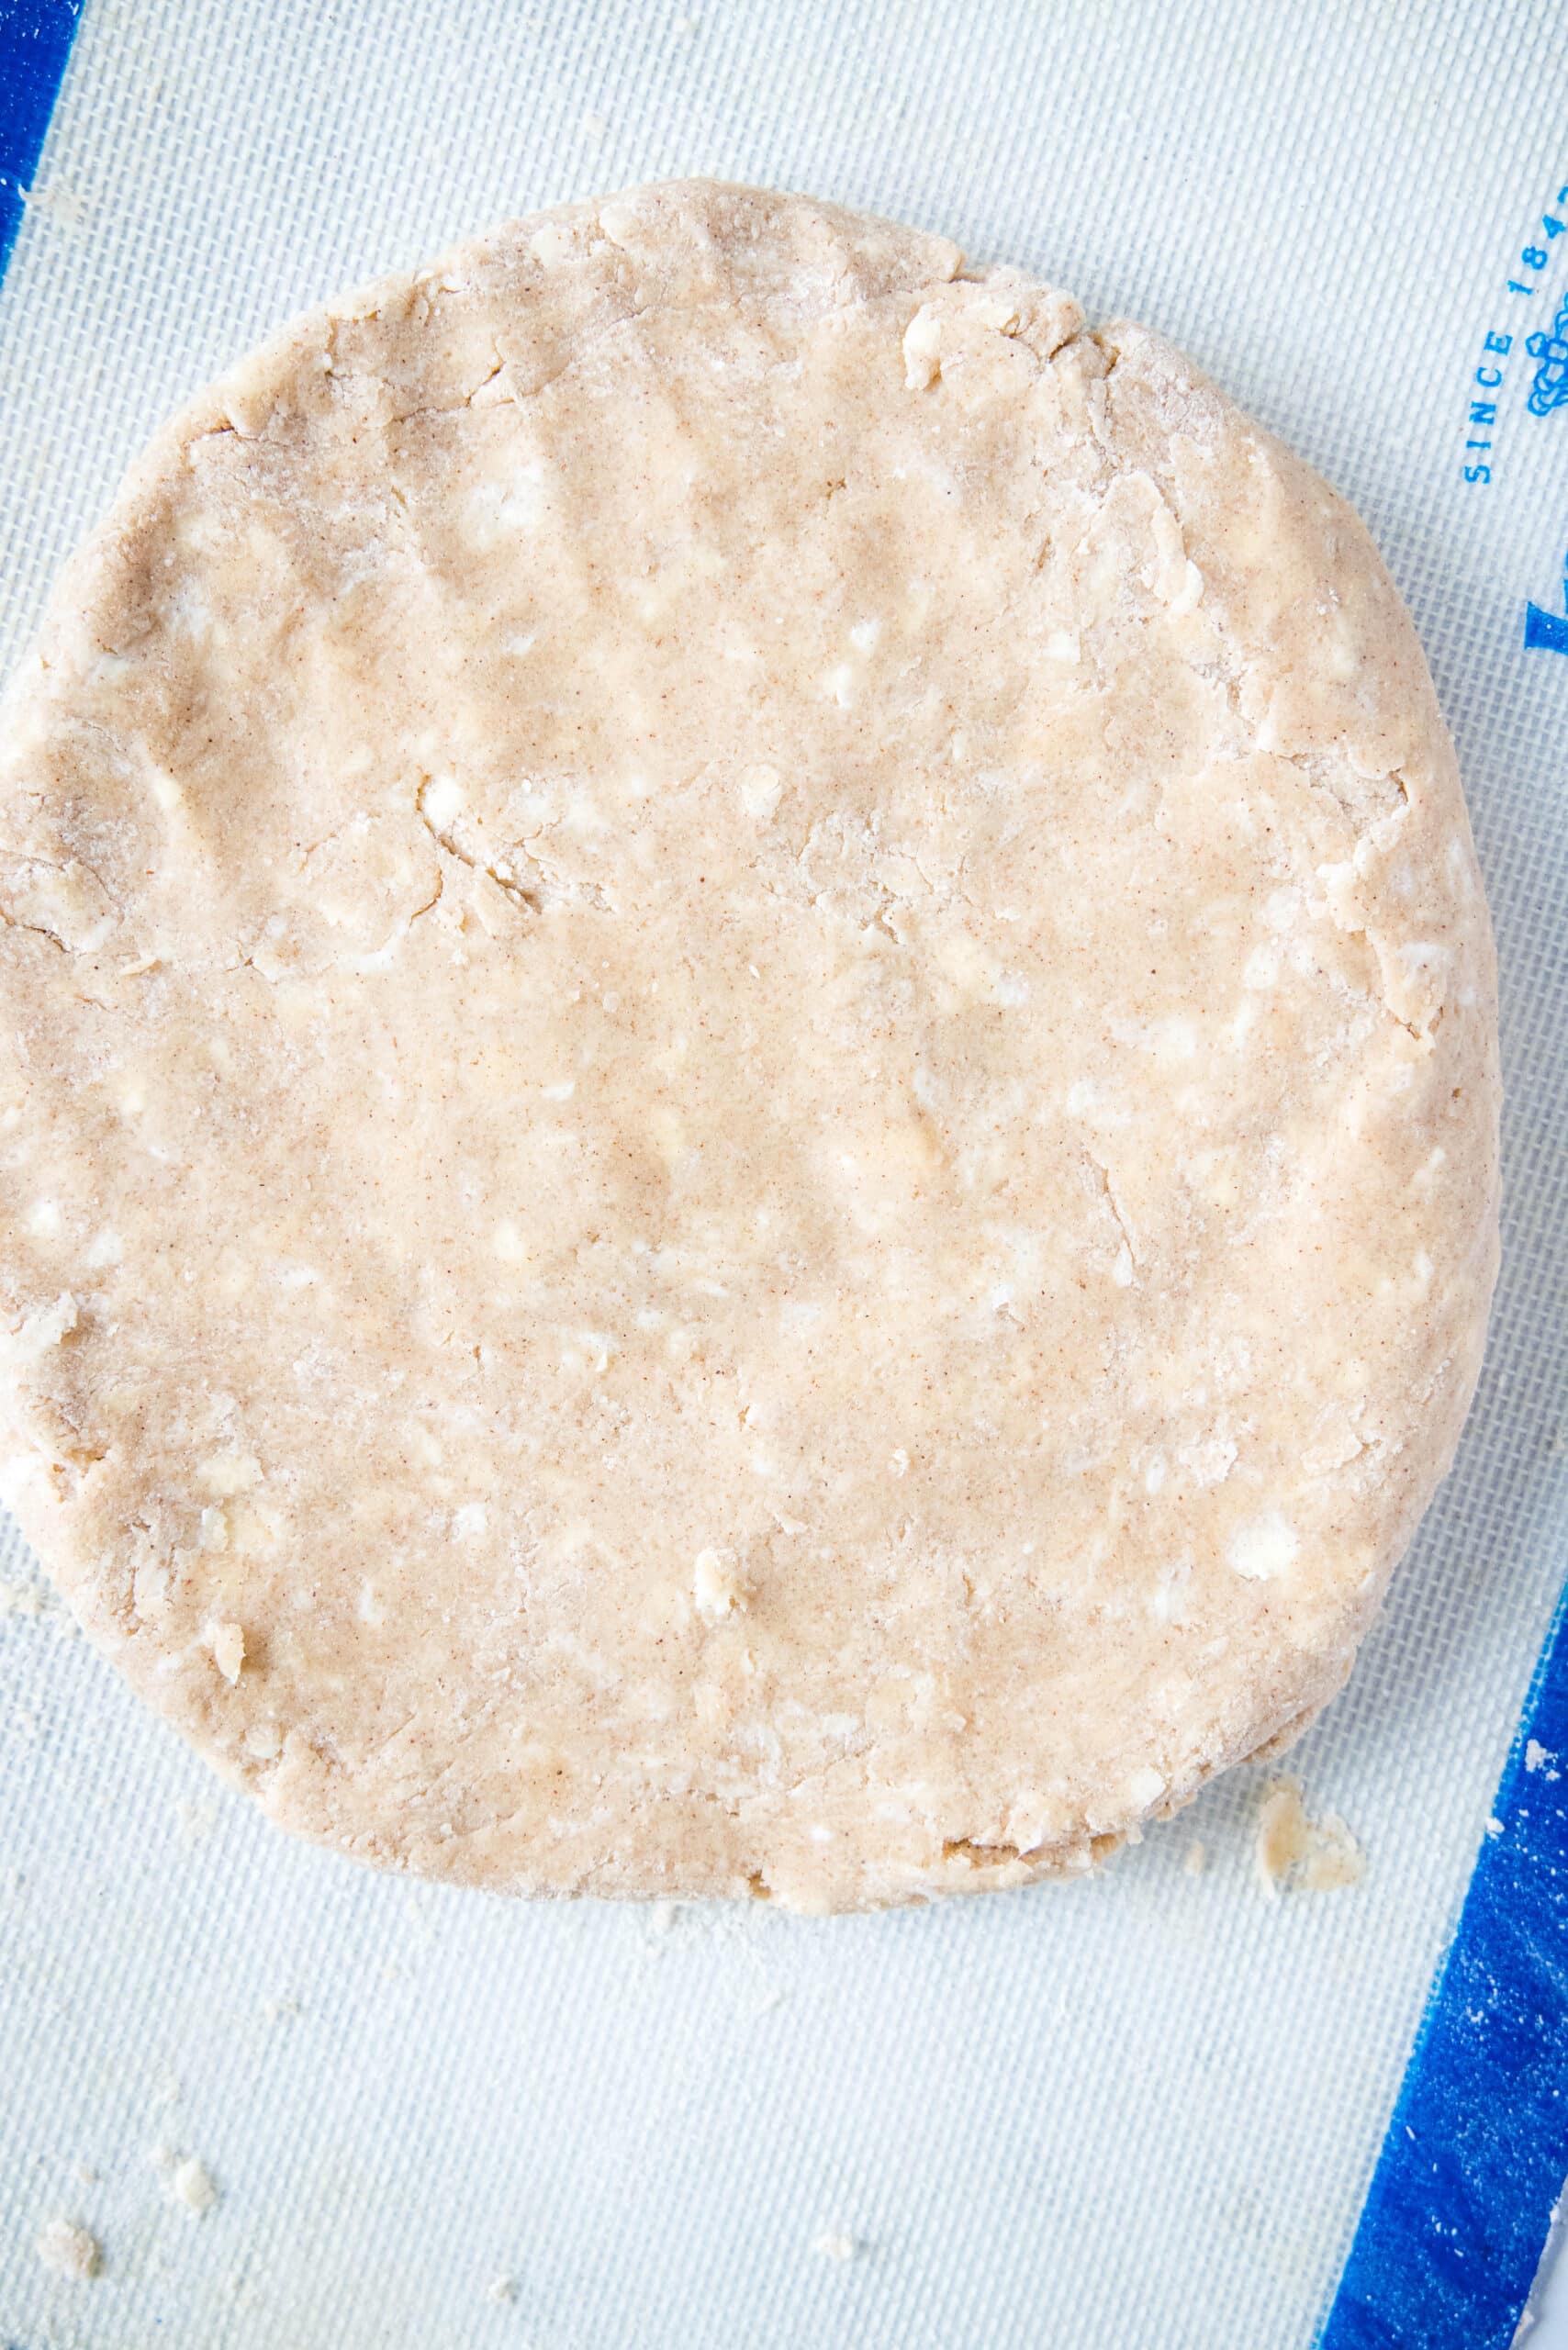 cinnamon scone dough in a round disk